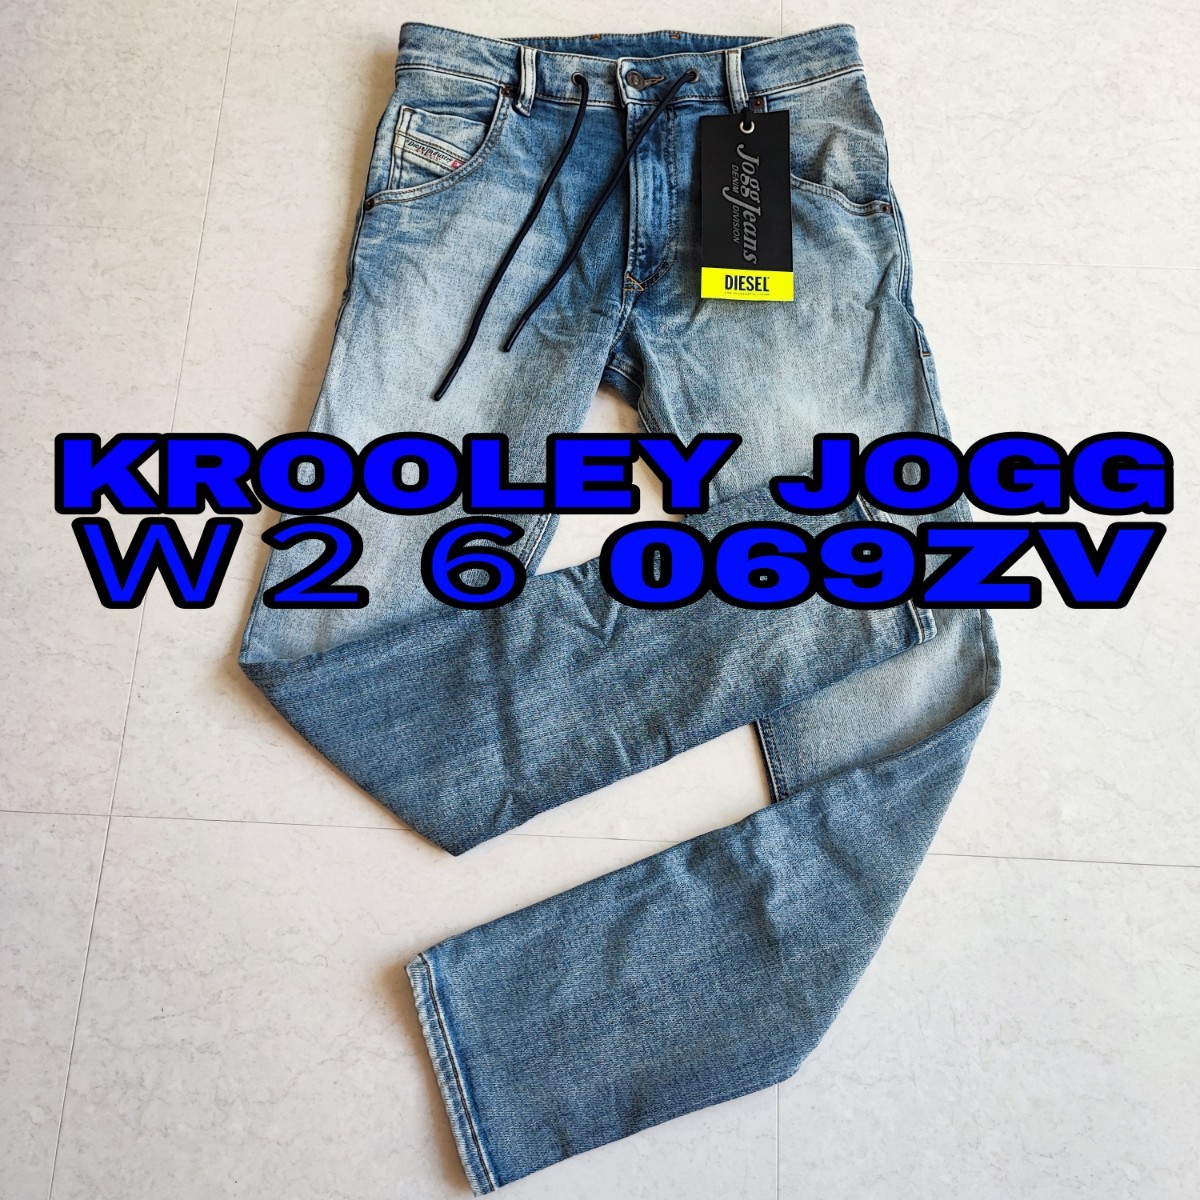 2023年最新】ヤフオク! -jogg jeans krooley w28の中古品・新品・未 